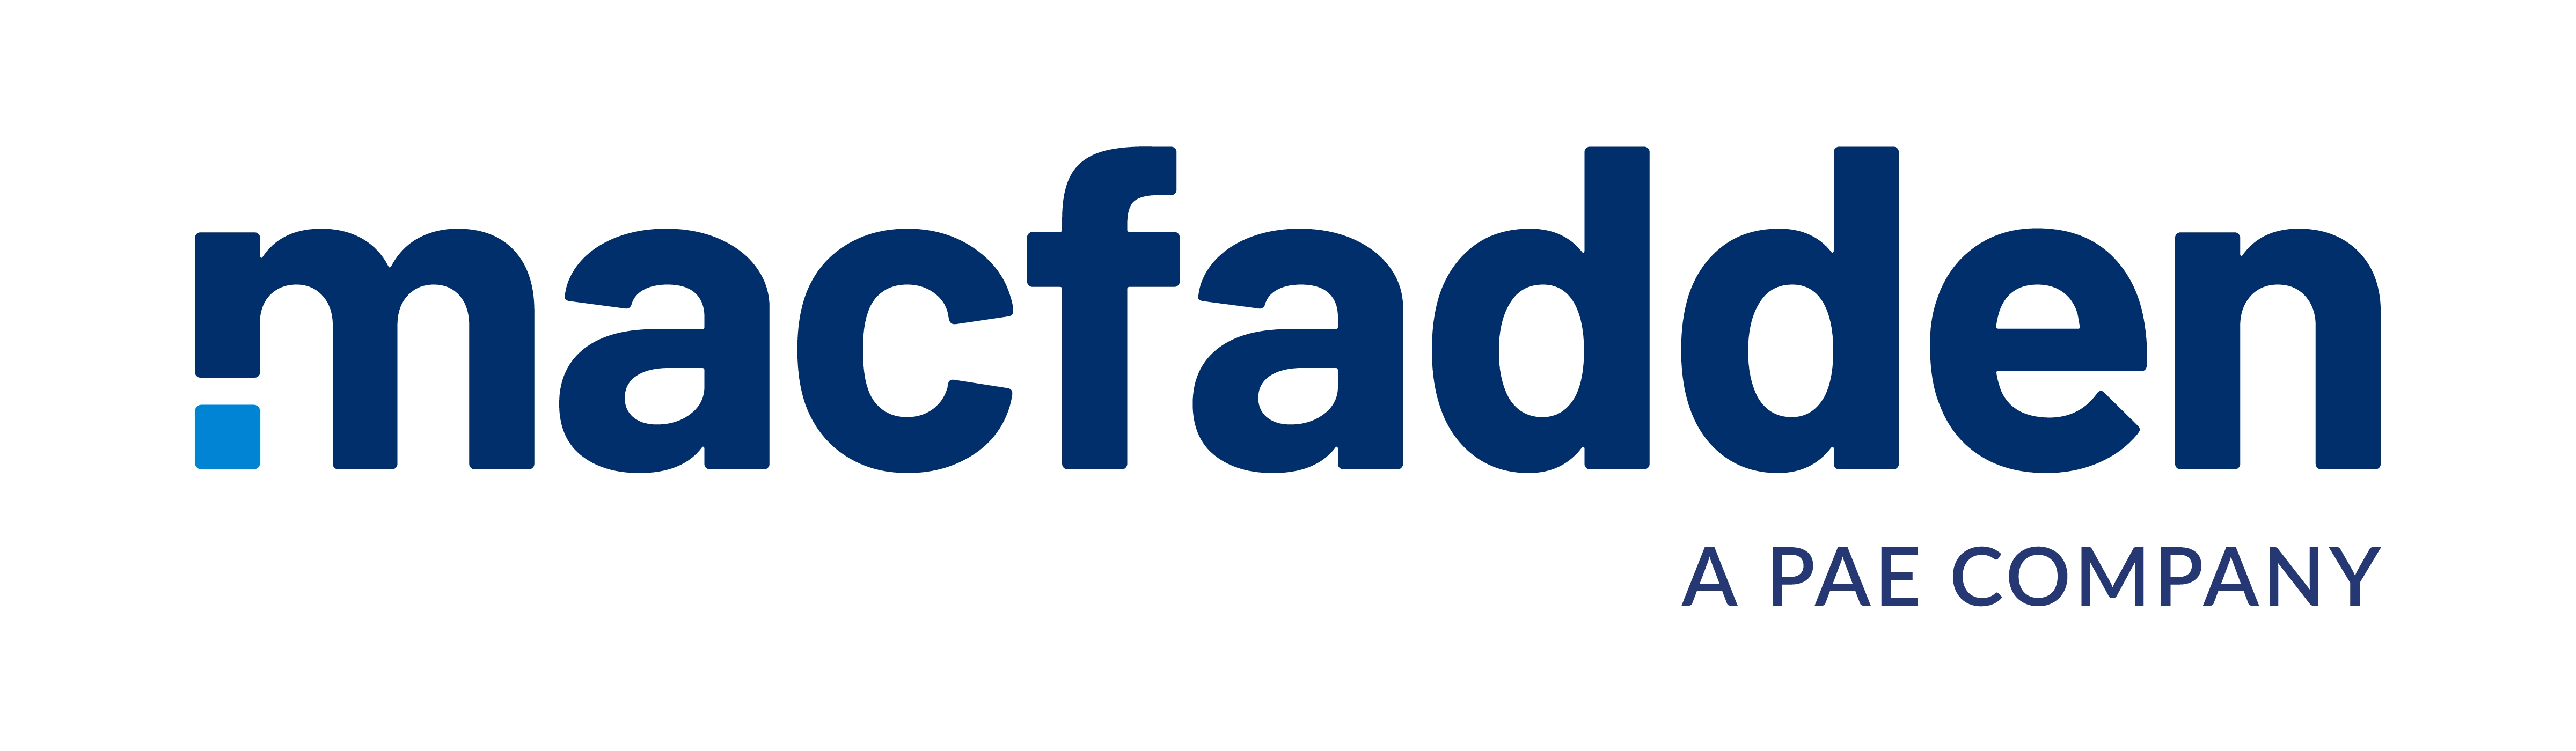 mcfadden logo